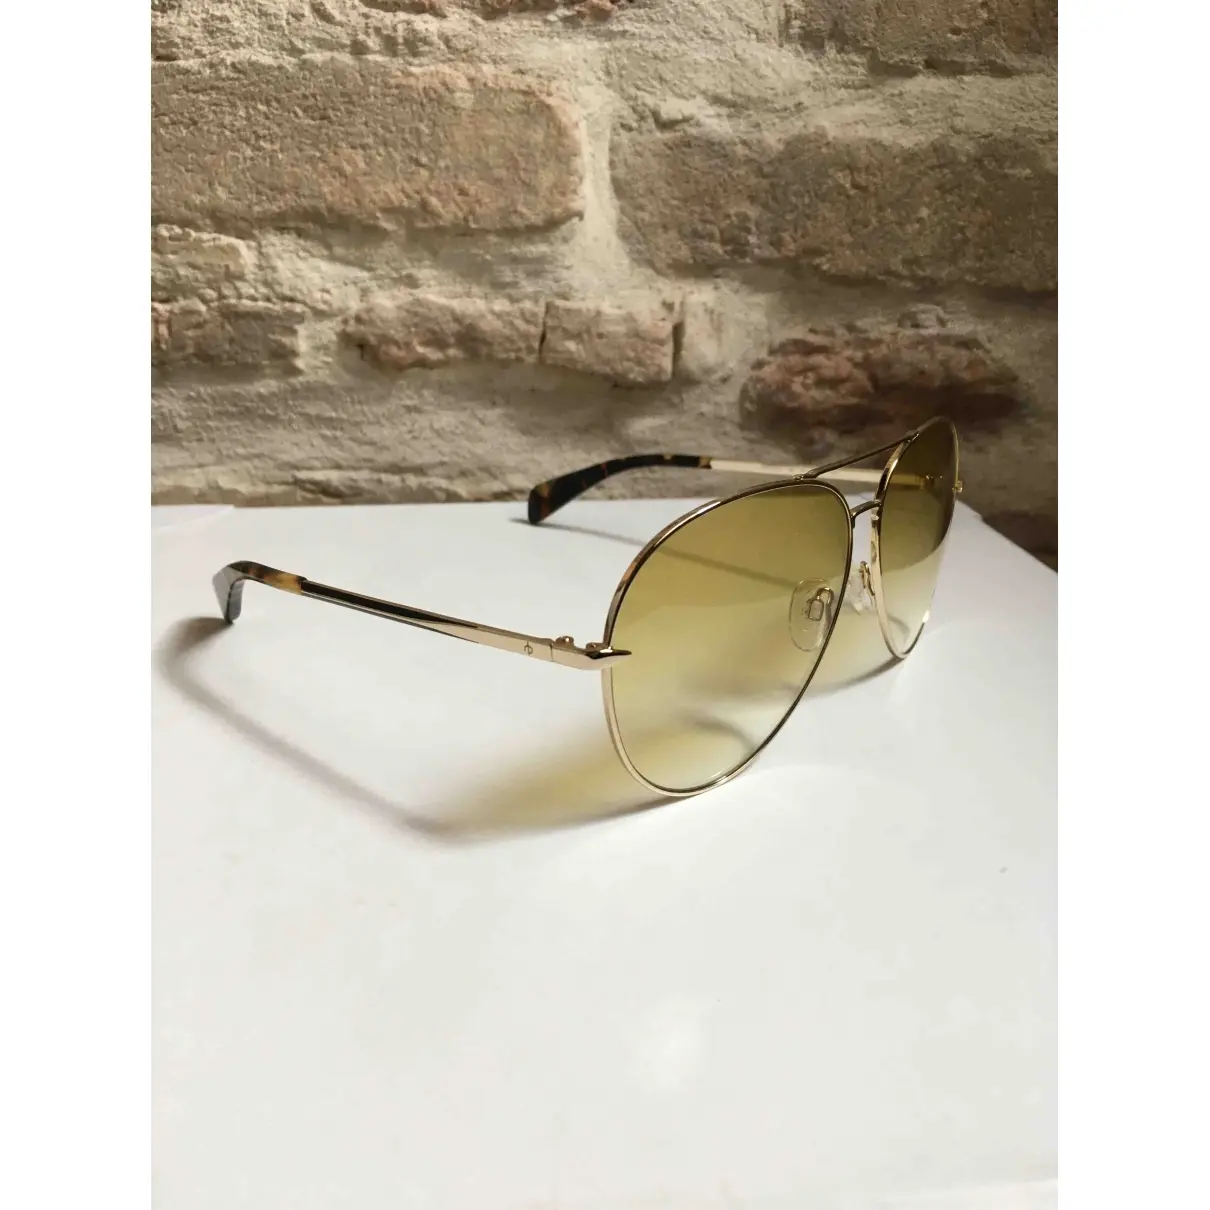 Rag & Bone Aviator sunglasses for sale